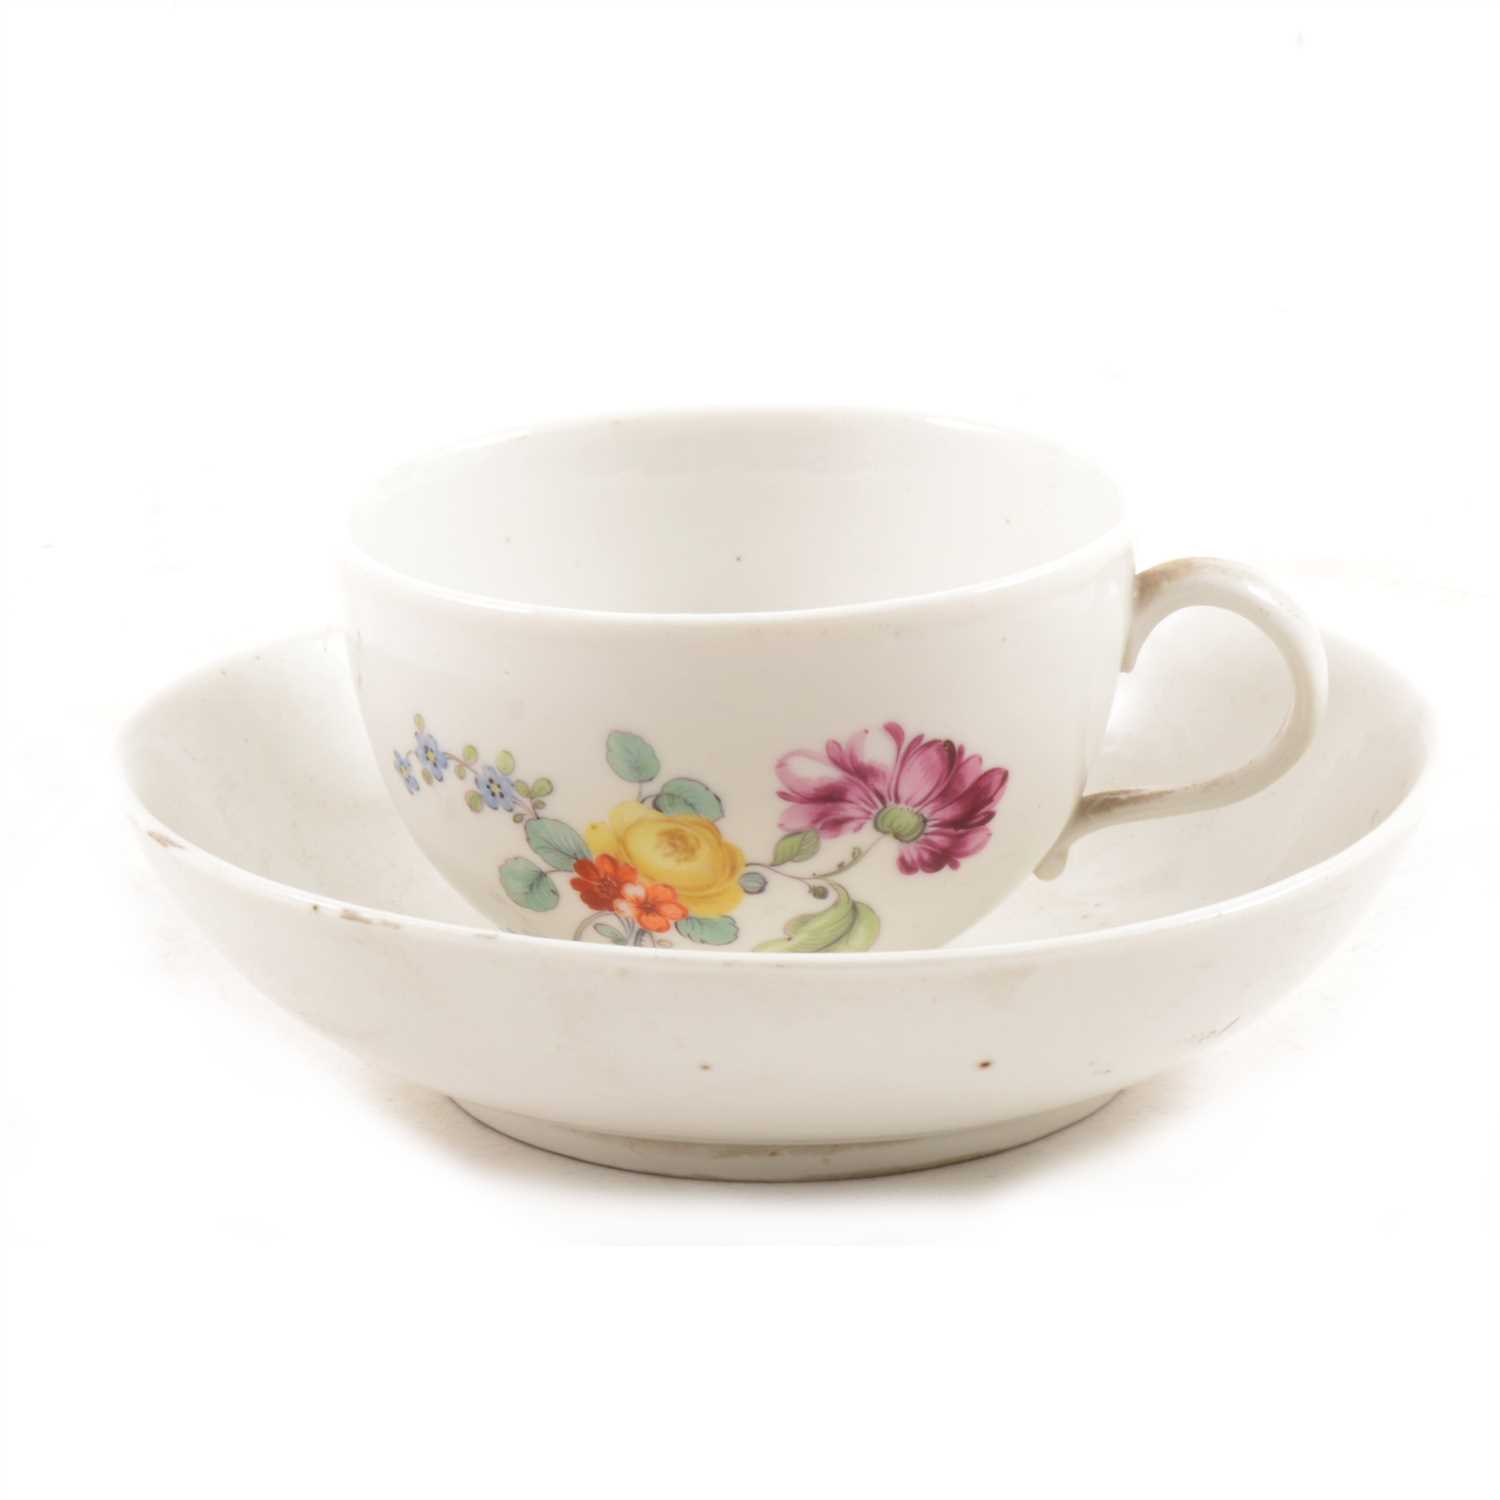 Lot 6 - Tournai porcelain, Hague decorated teacup and saucer, circa 1780